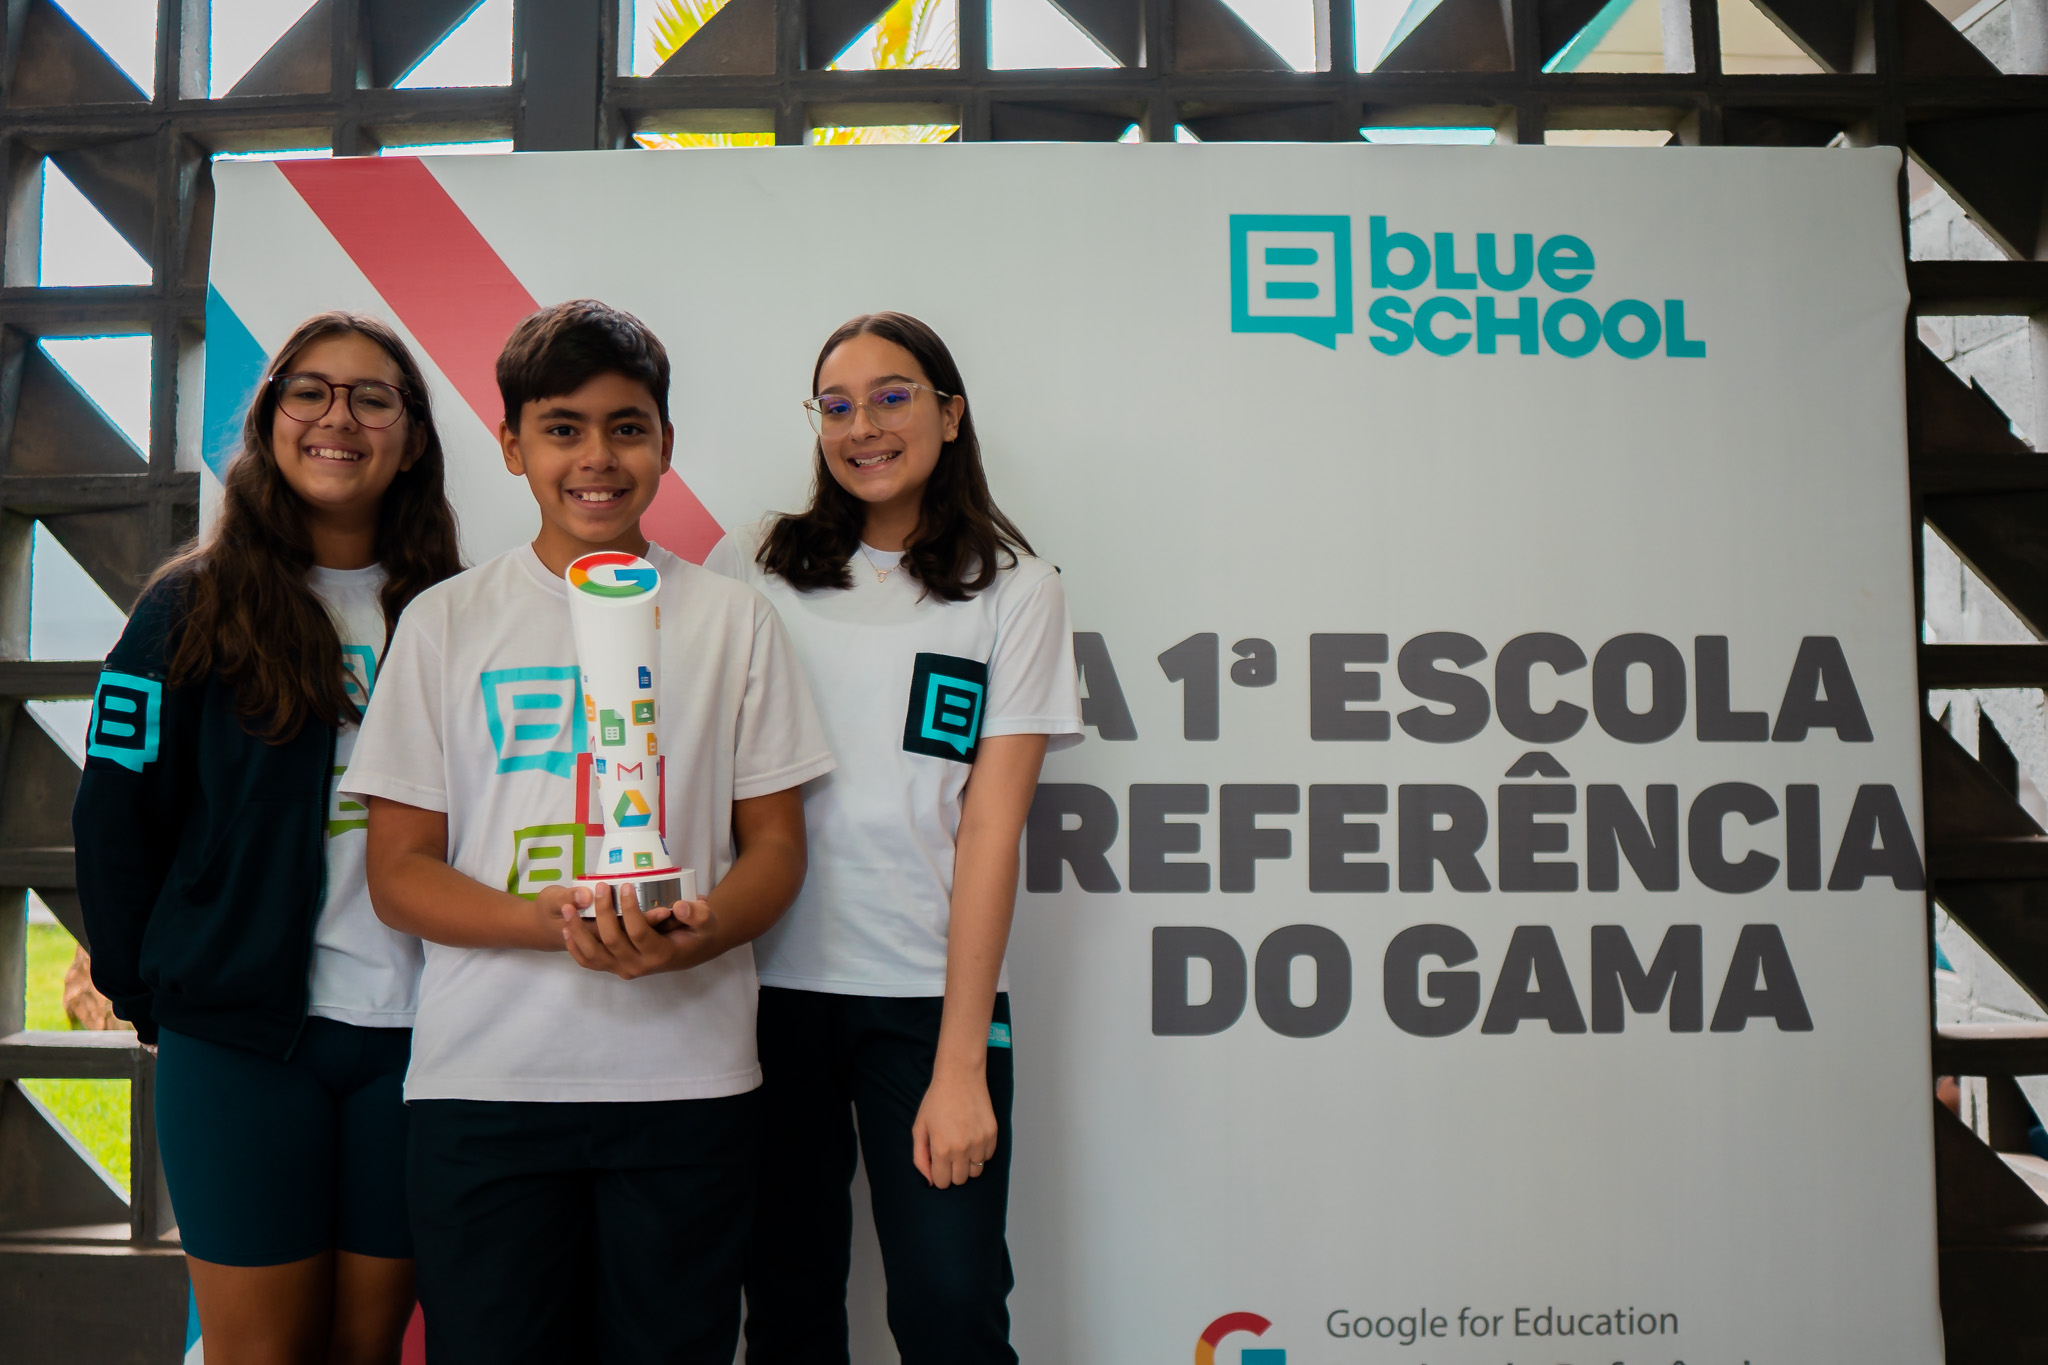 Blue School se torna a primeira Escola Referência do Google For Education da cidade do Gama!